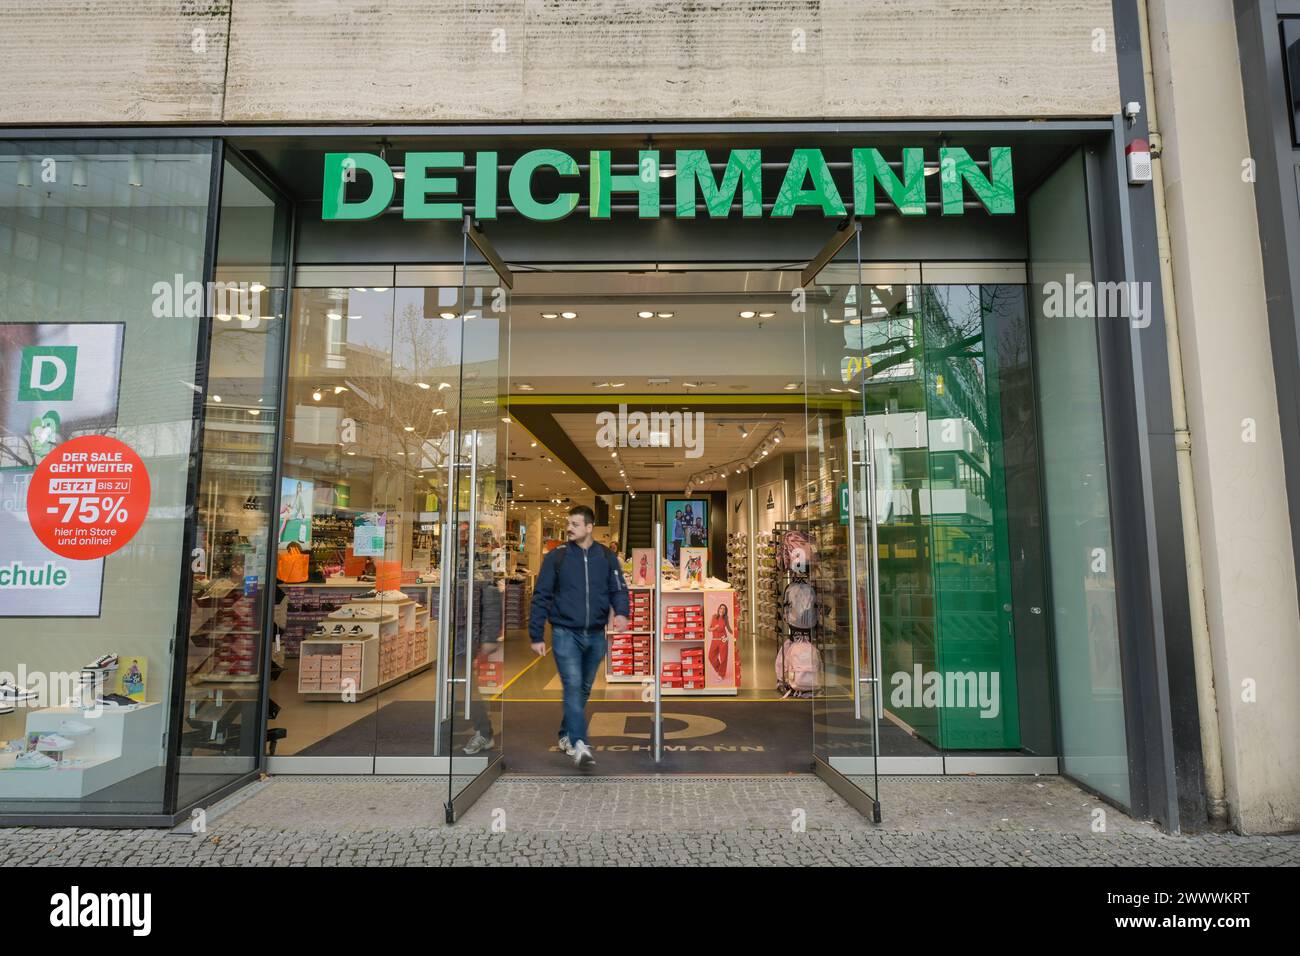 Deichmann Schuhe, Geschäft, Tauentzienstraße, Charlottenburg, Berlin, Deutschland Stock Photo